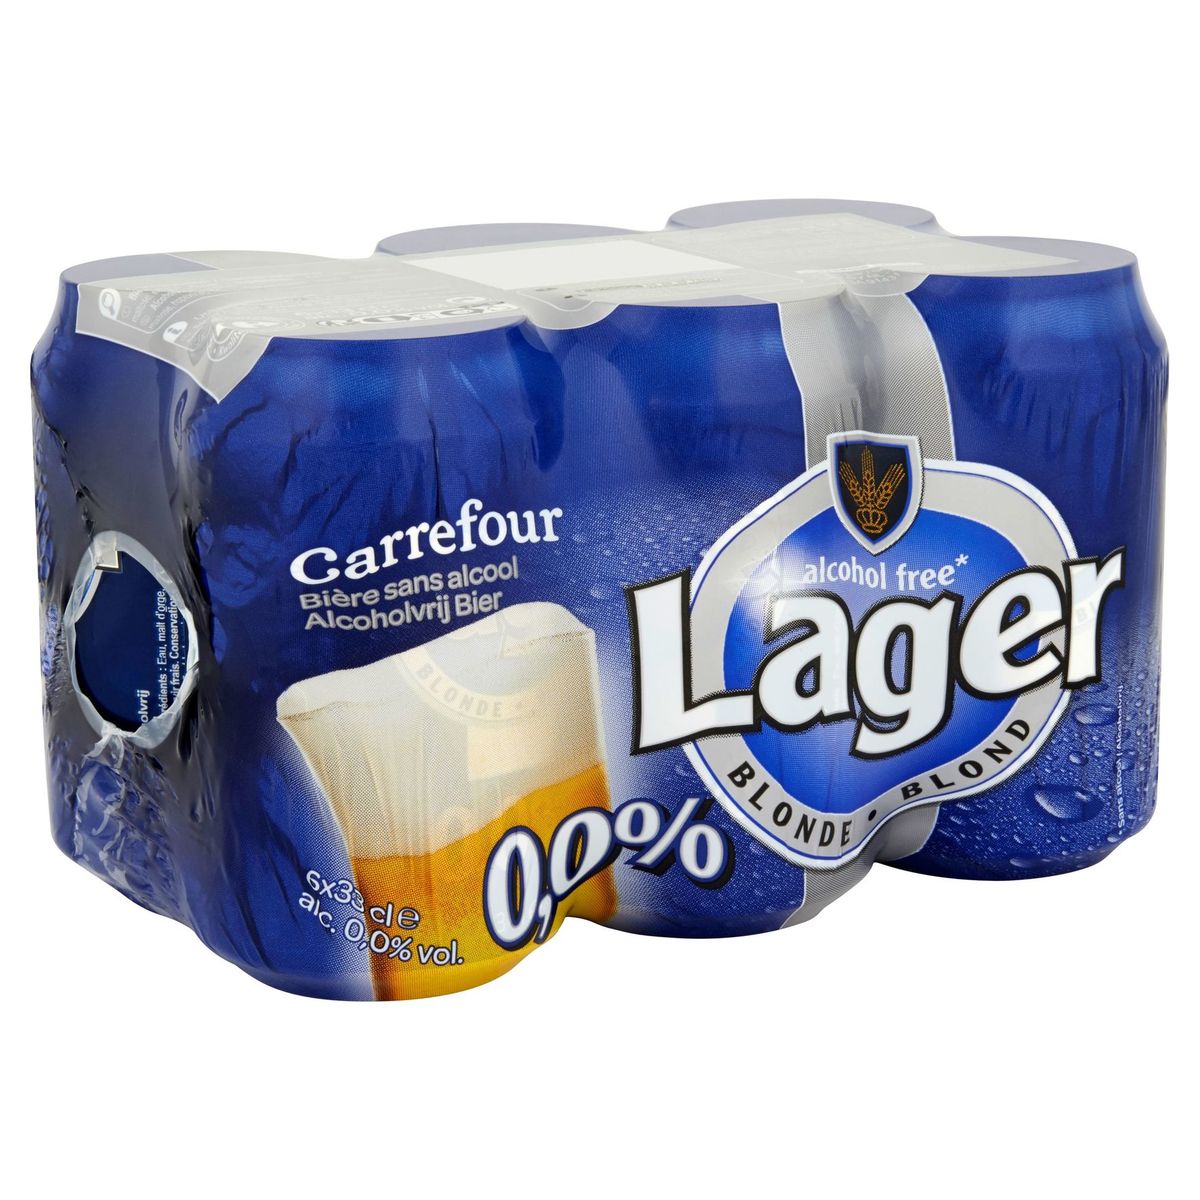 Carrefour Lager Blond Alcoholvrij Bier 6 x 33 cl